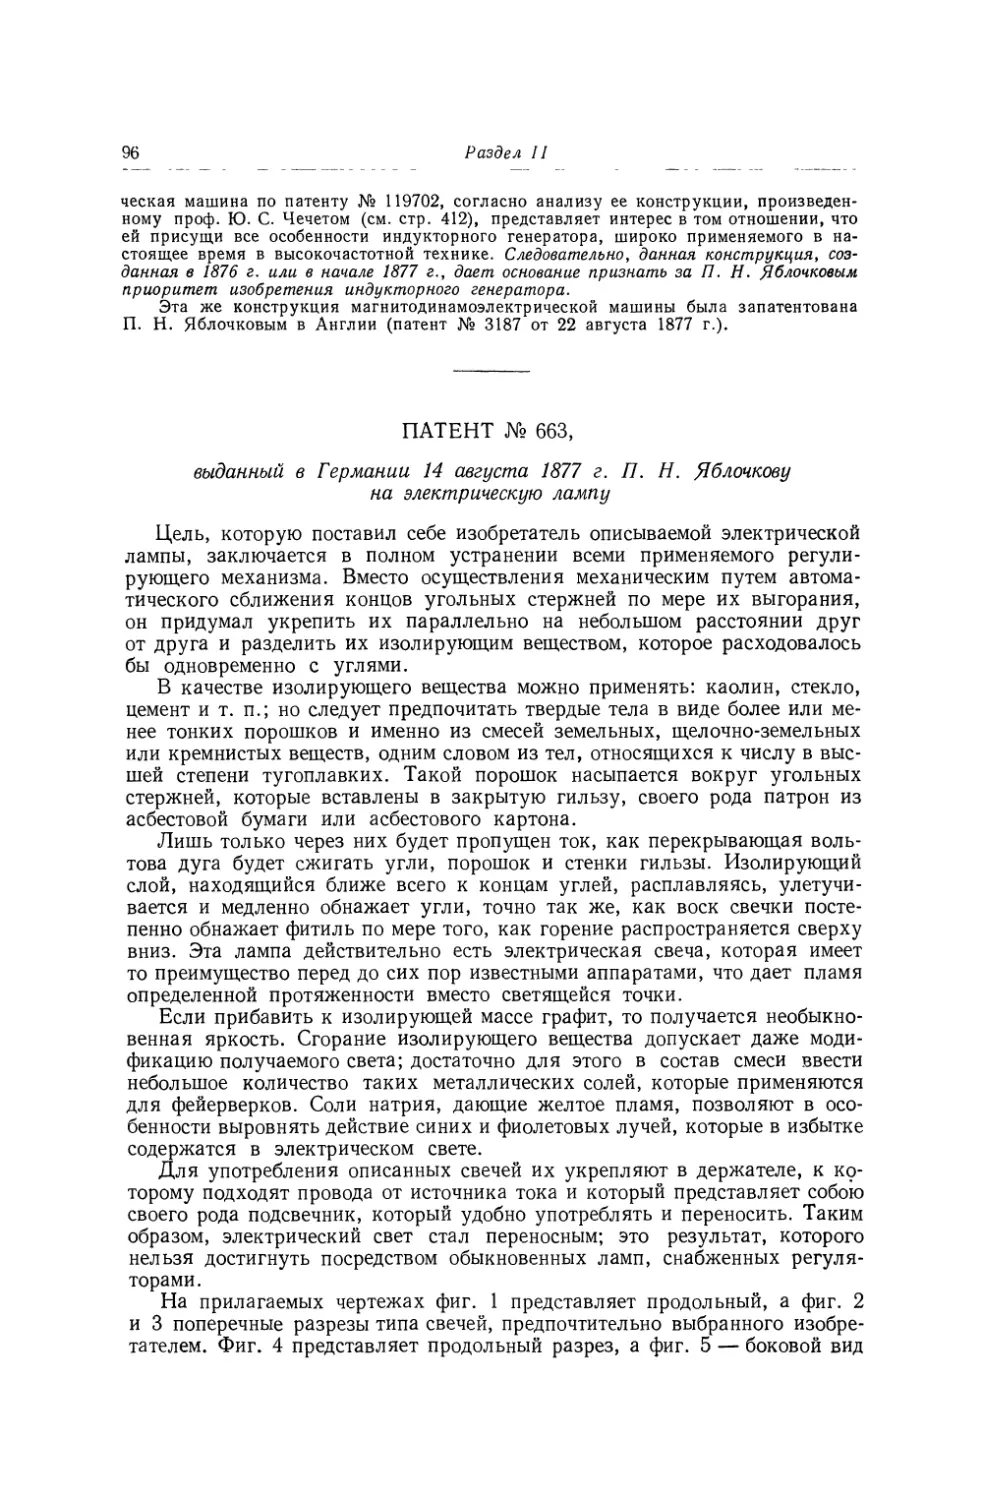 Патент № 663, выданный в Германии 14 августа 1877 г. П. Н. Яблочкову на электрическую лампу